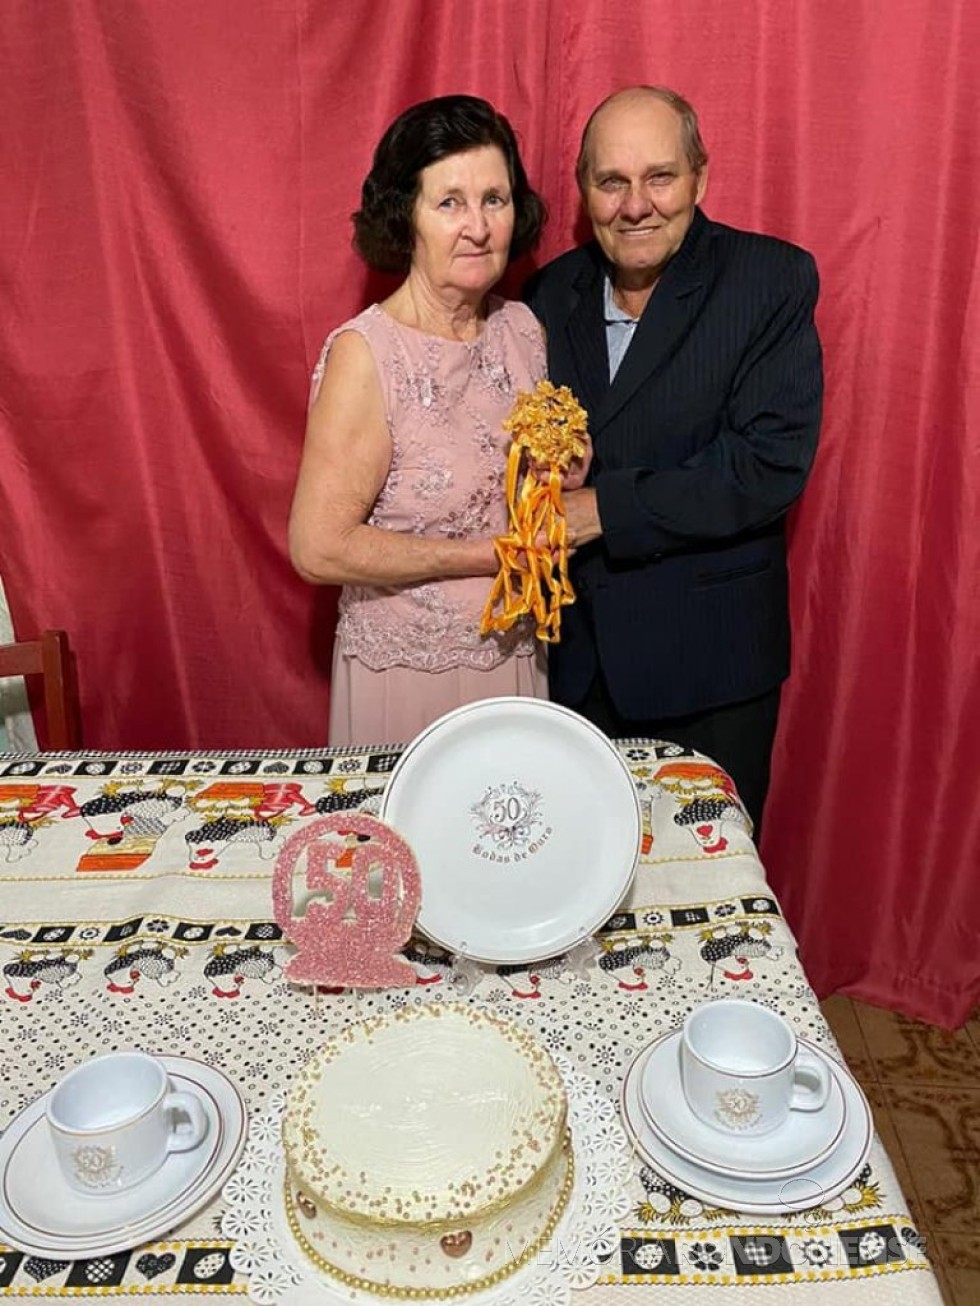 || Casal rondonense Dulce e Levino Fenner que comemorou Bodas de Ouro, em julho de 2020.
Imagem: Acervo Jheison Griep - FOTO 17 - 